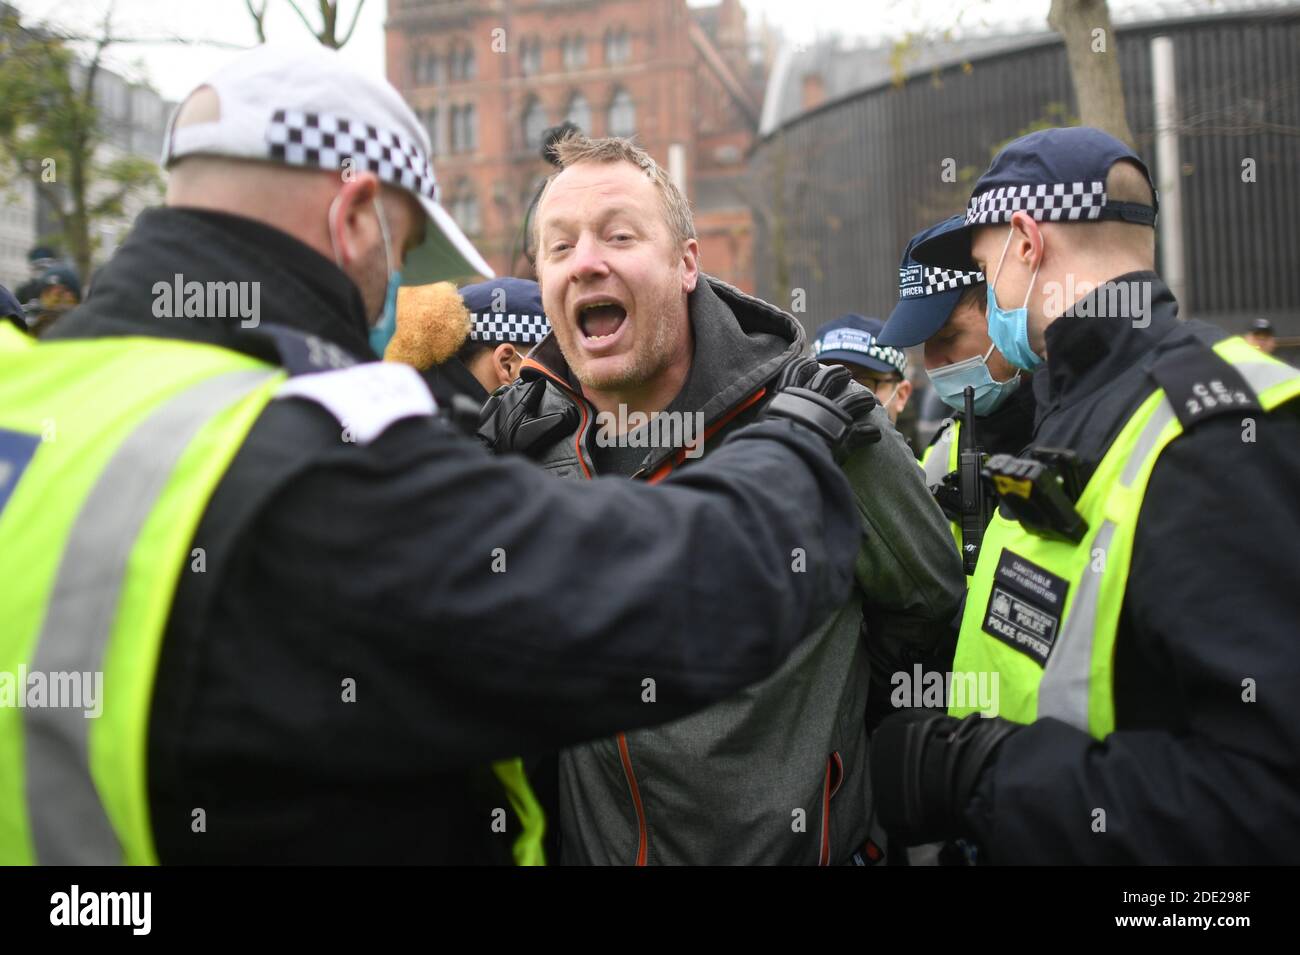 Un homme est détenu par la police lors d'une manifestation anti-verrouillage à Kings Cross St Pancras, Londres. Banque D'Images